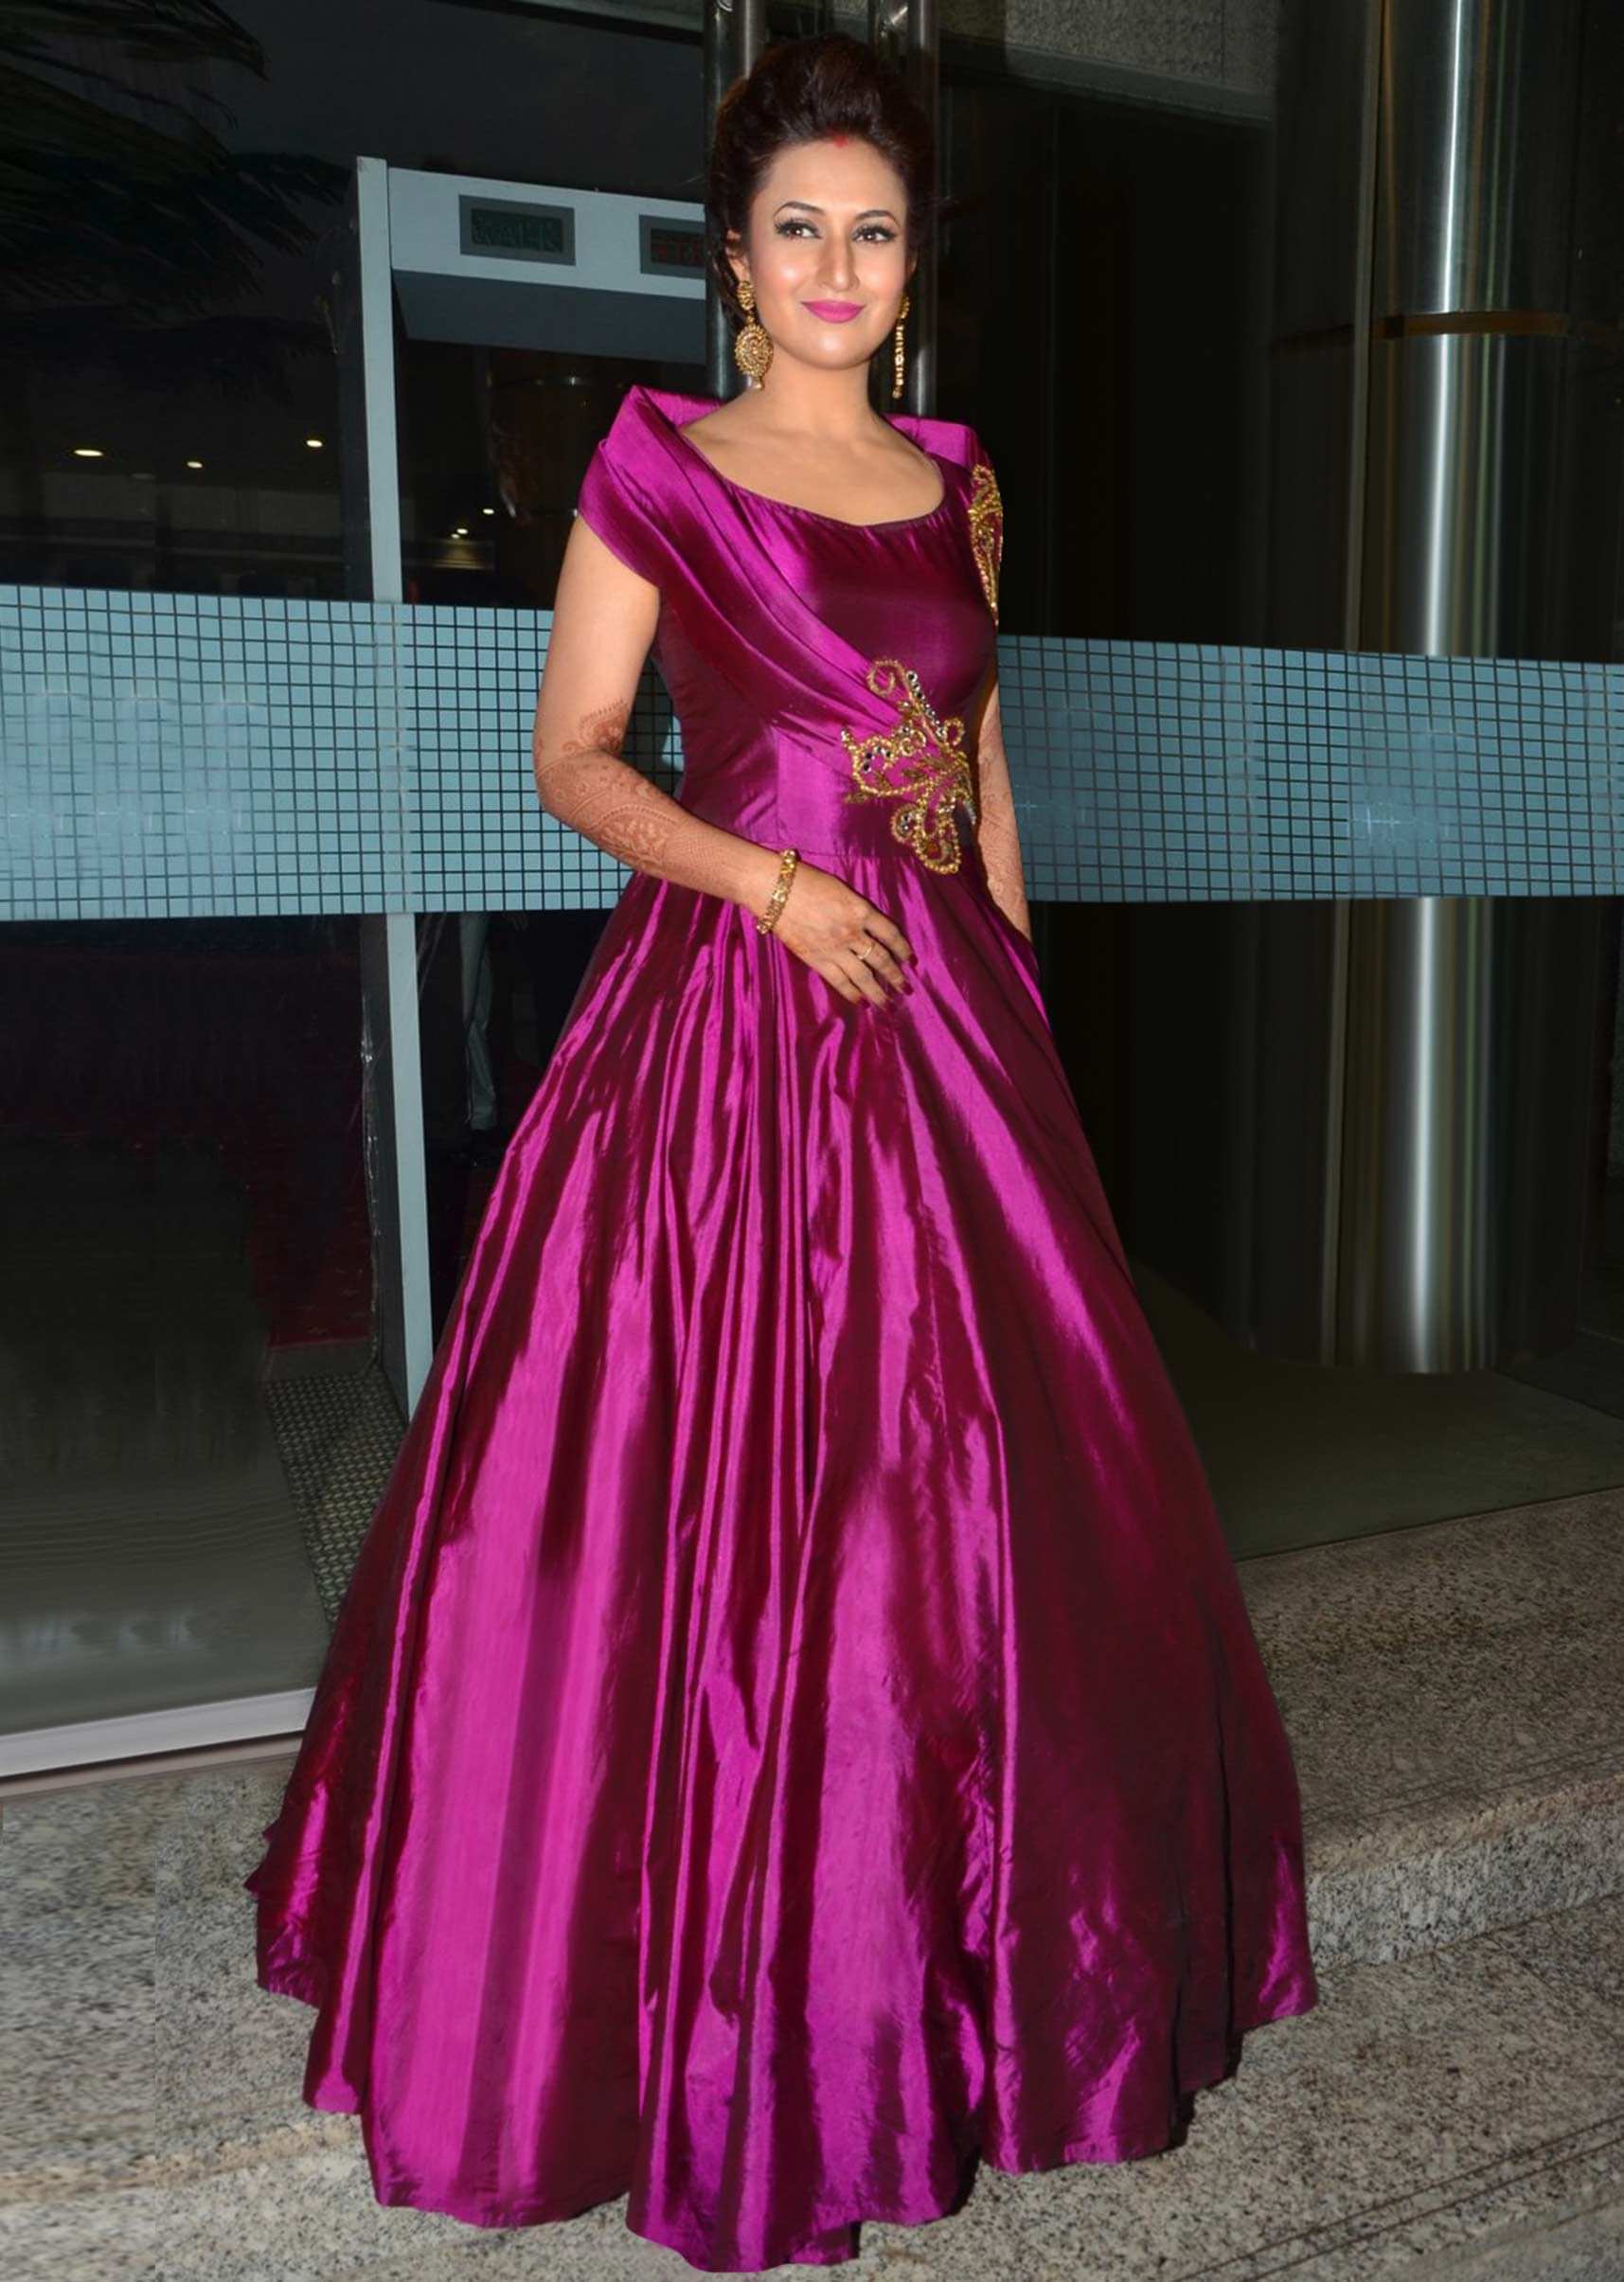 Divyanka Tripathi in kalki magenta gown at her reception